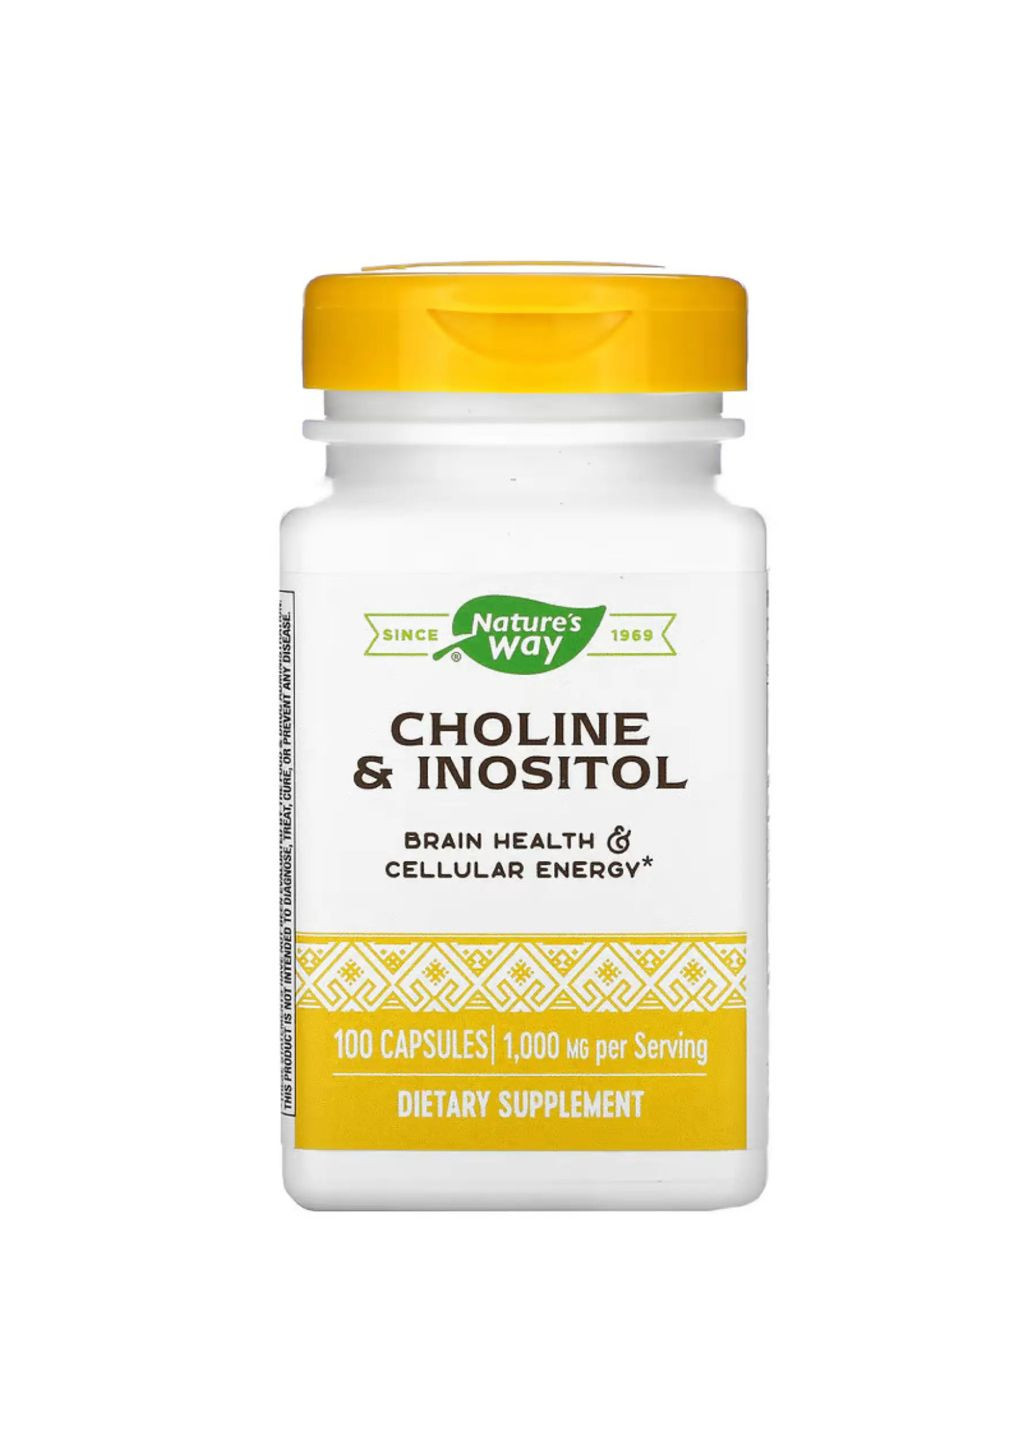 Choline & Inositol - 100 caps добавка для здоровья мозга и энергии на клеточном уровне Nature's Way (284171989)